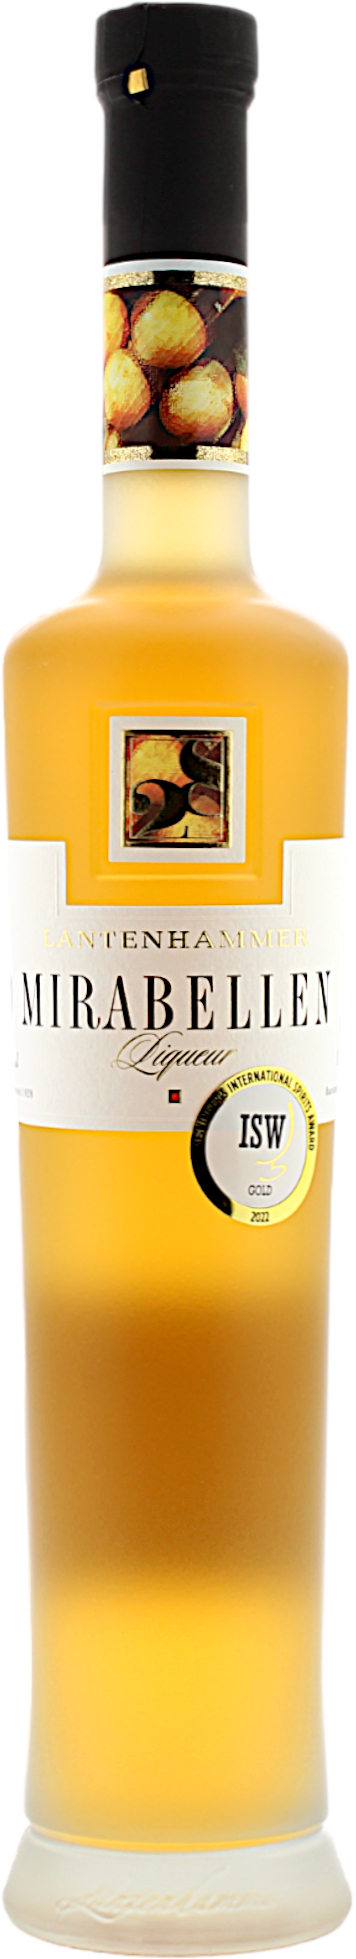 Lantenhammer Mirabellen Liqueur 25.0% 0,5l